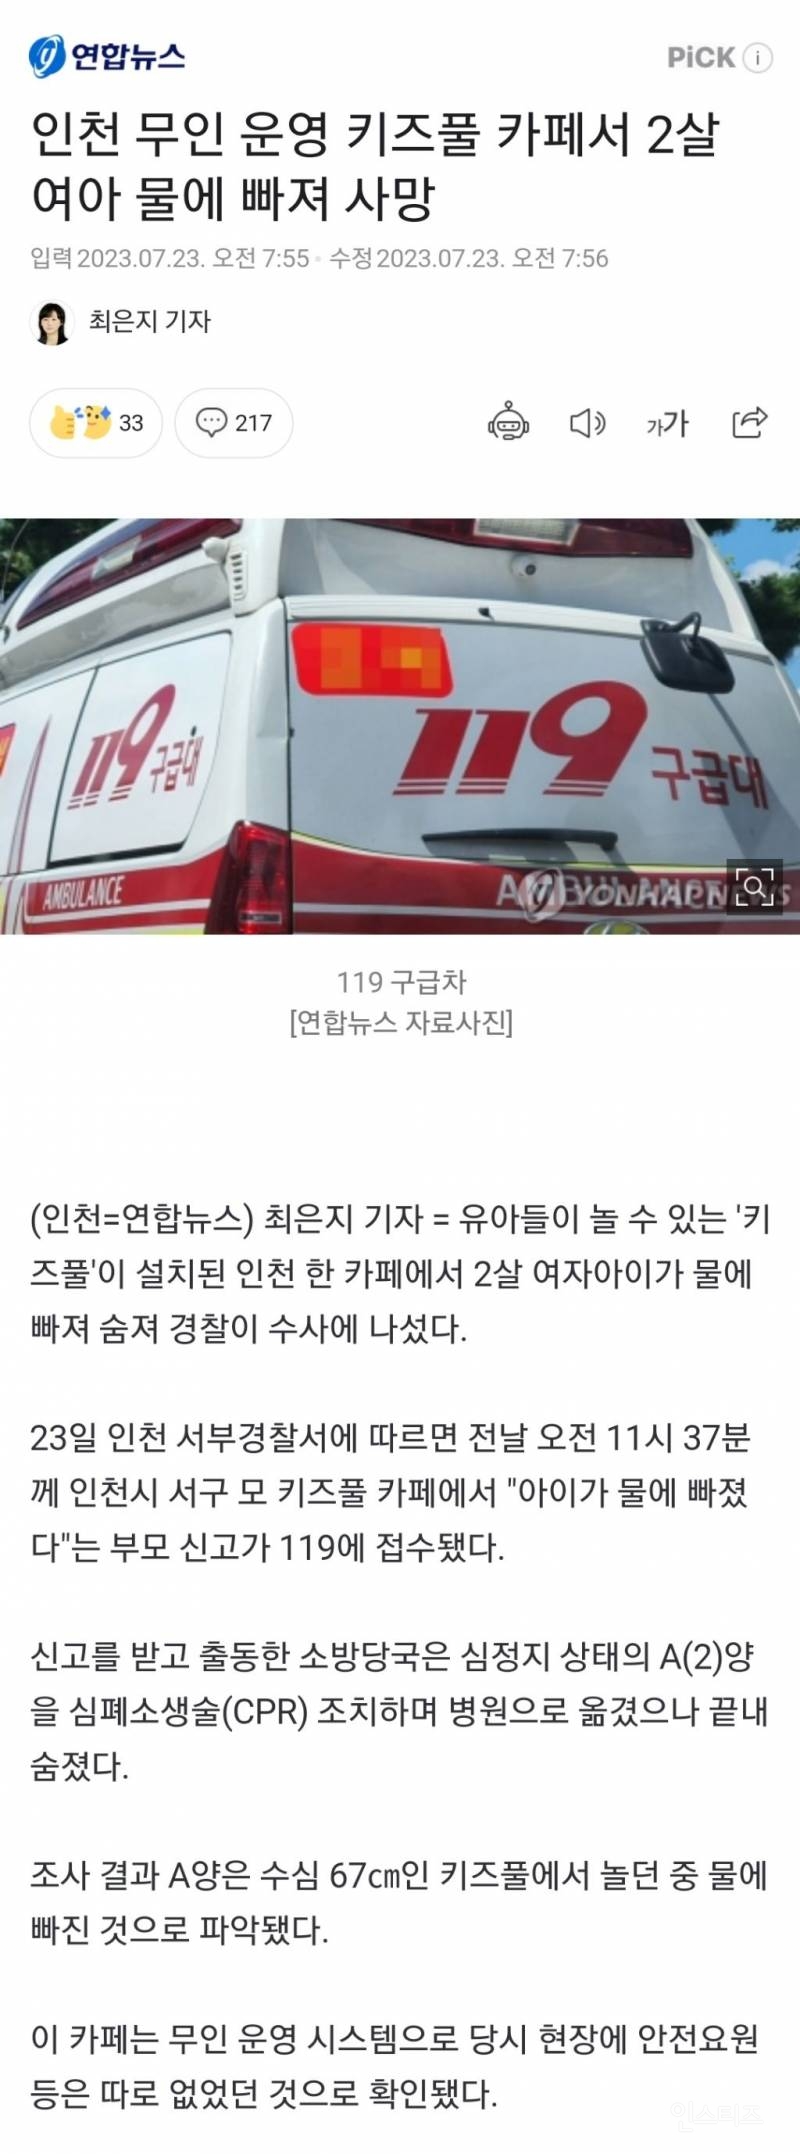 (뉴스)인천 무인 운영 키즈풀 카페서 2살 여아 물에 빠져 사망 | 인스티즈